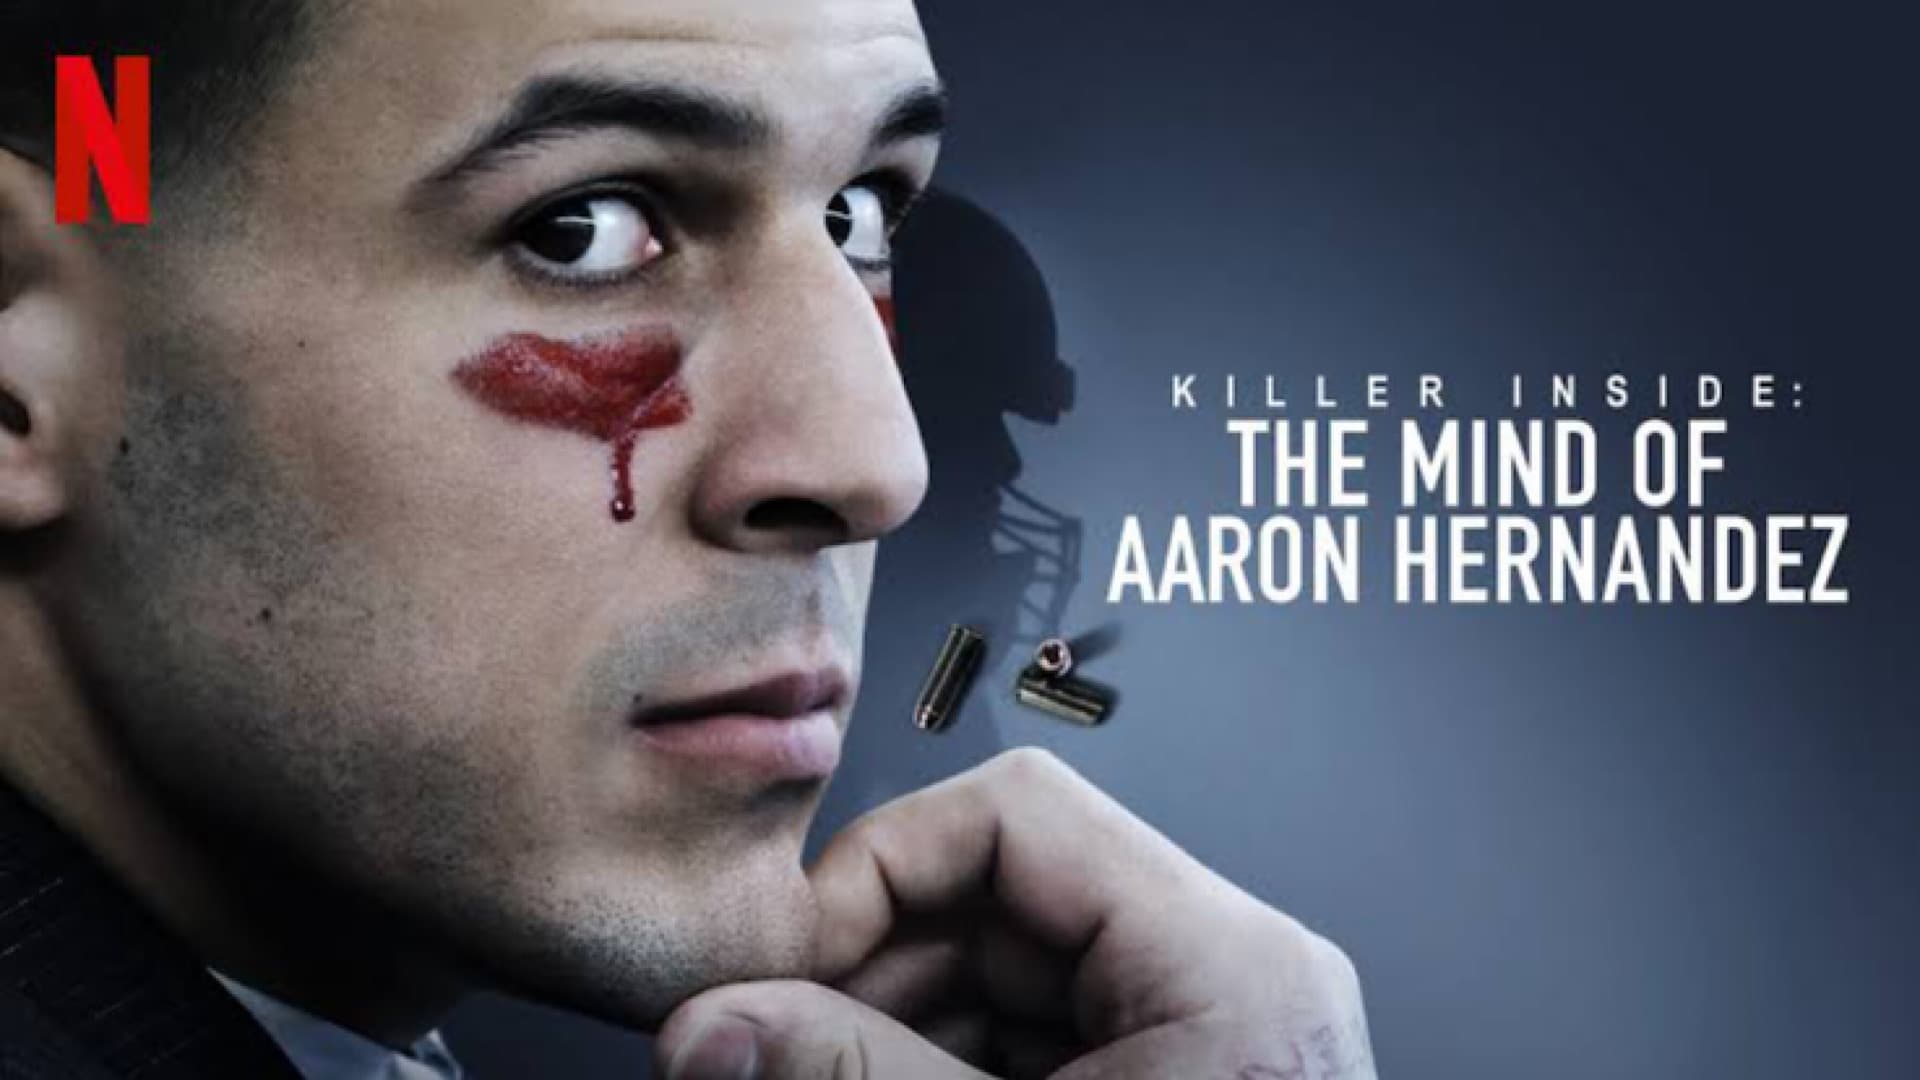 El asesino oculto: En la mente de Aaron Hernandez